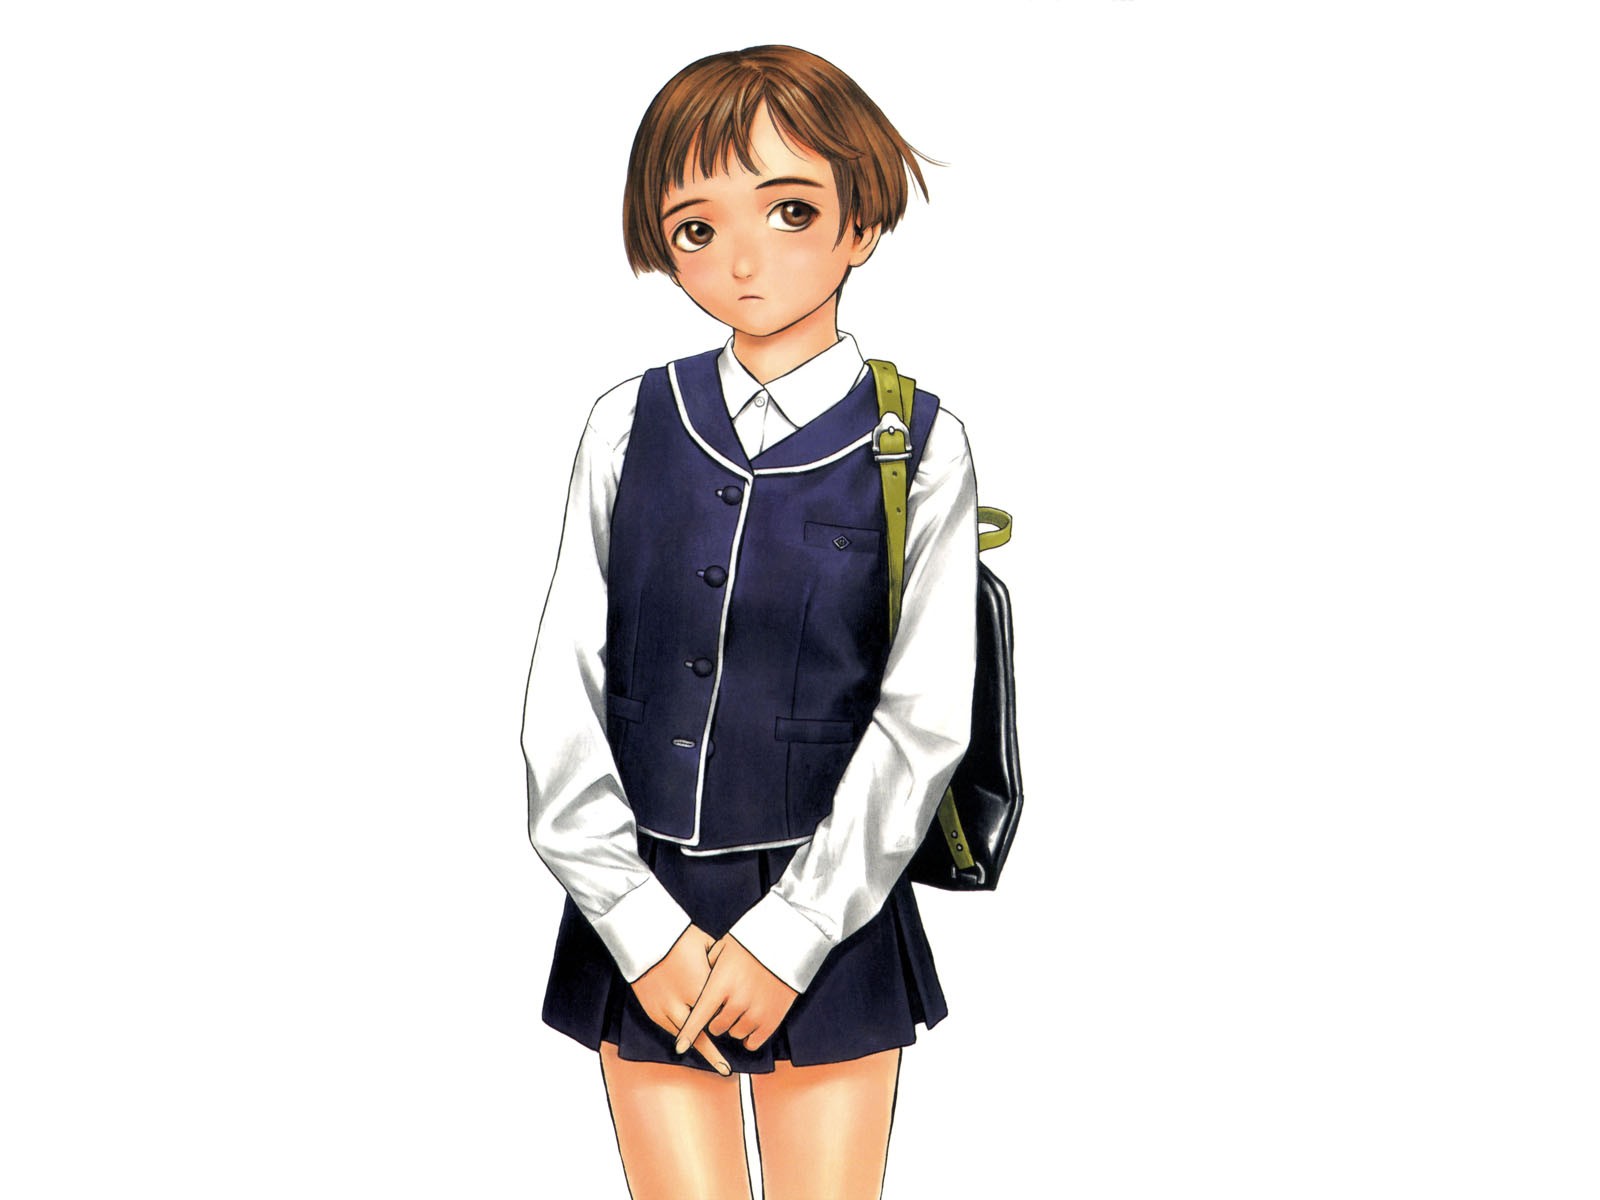 Anime 1600x1200 Murata Range original characters anime girls anime school uniform miniskirt simple background schoolgirl white background short hair skirt